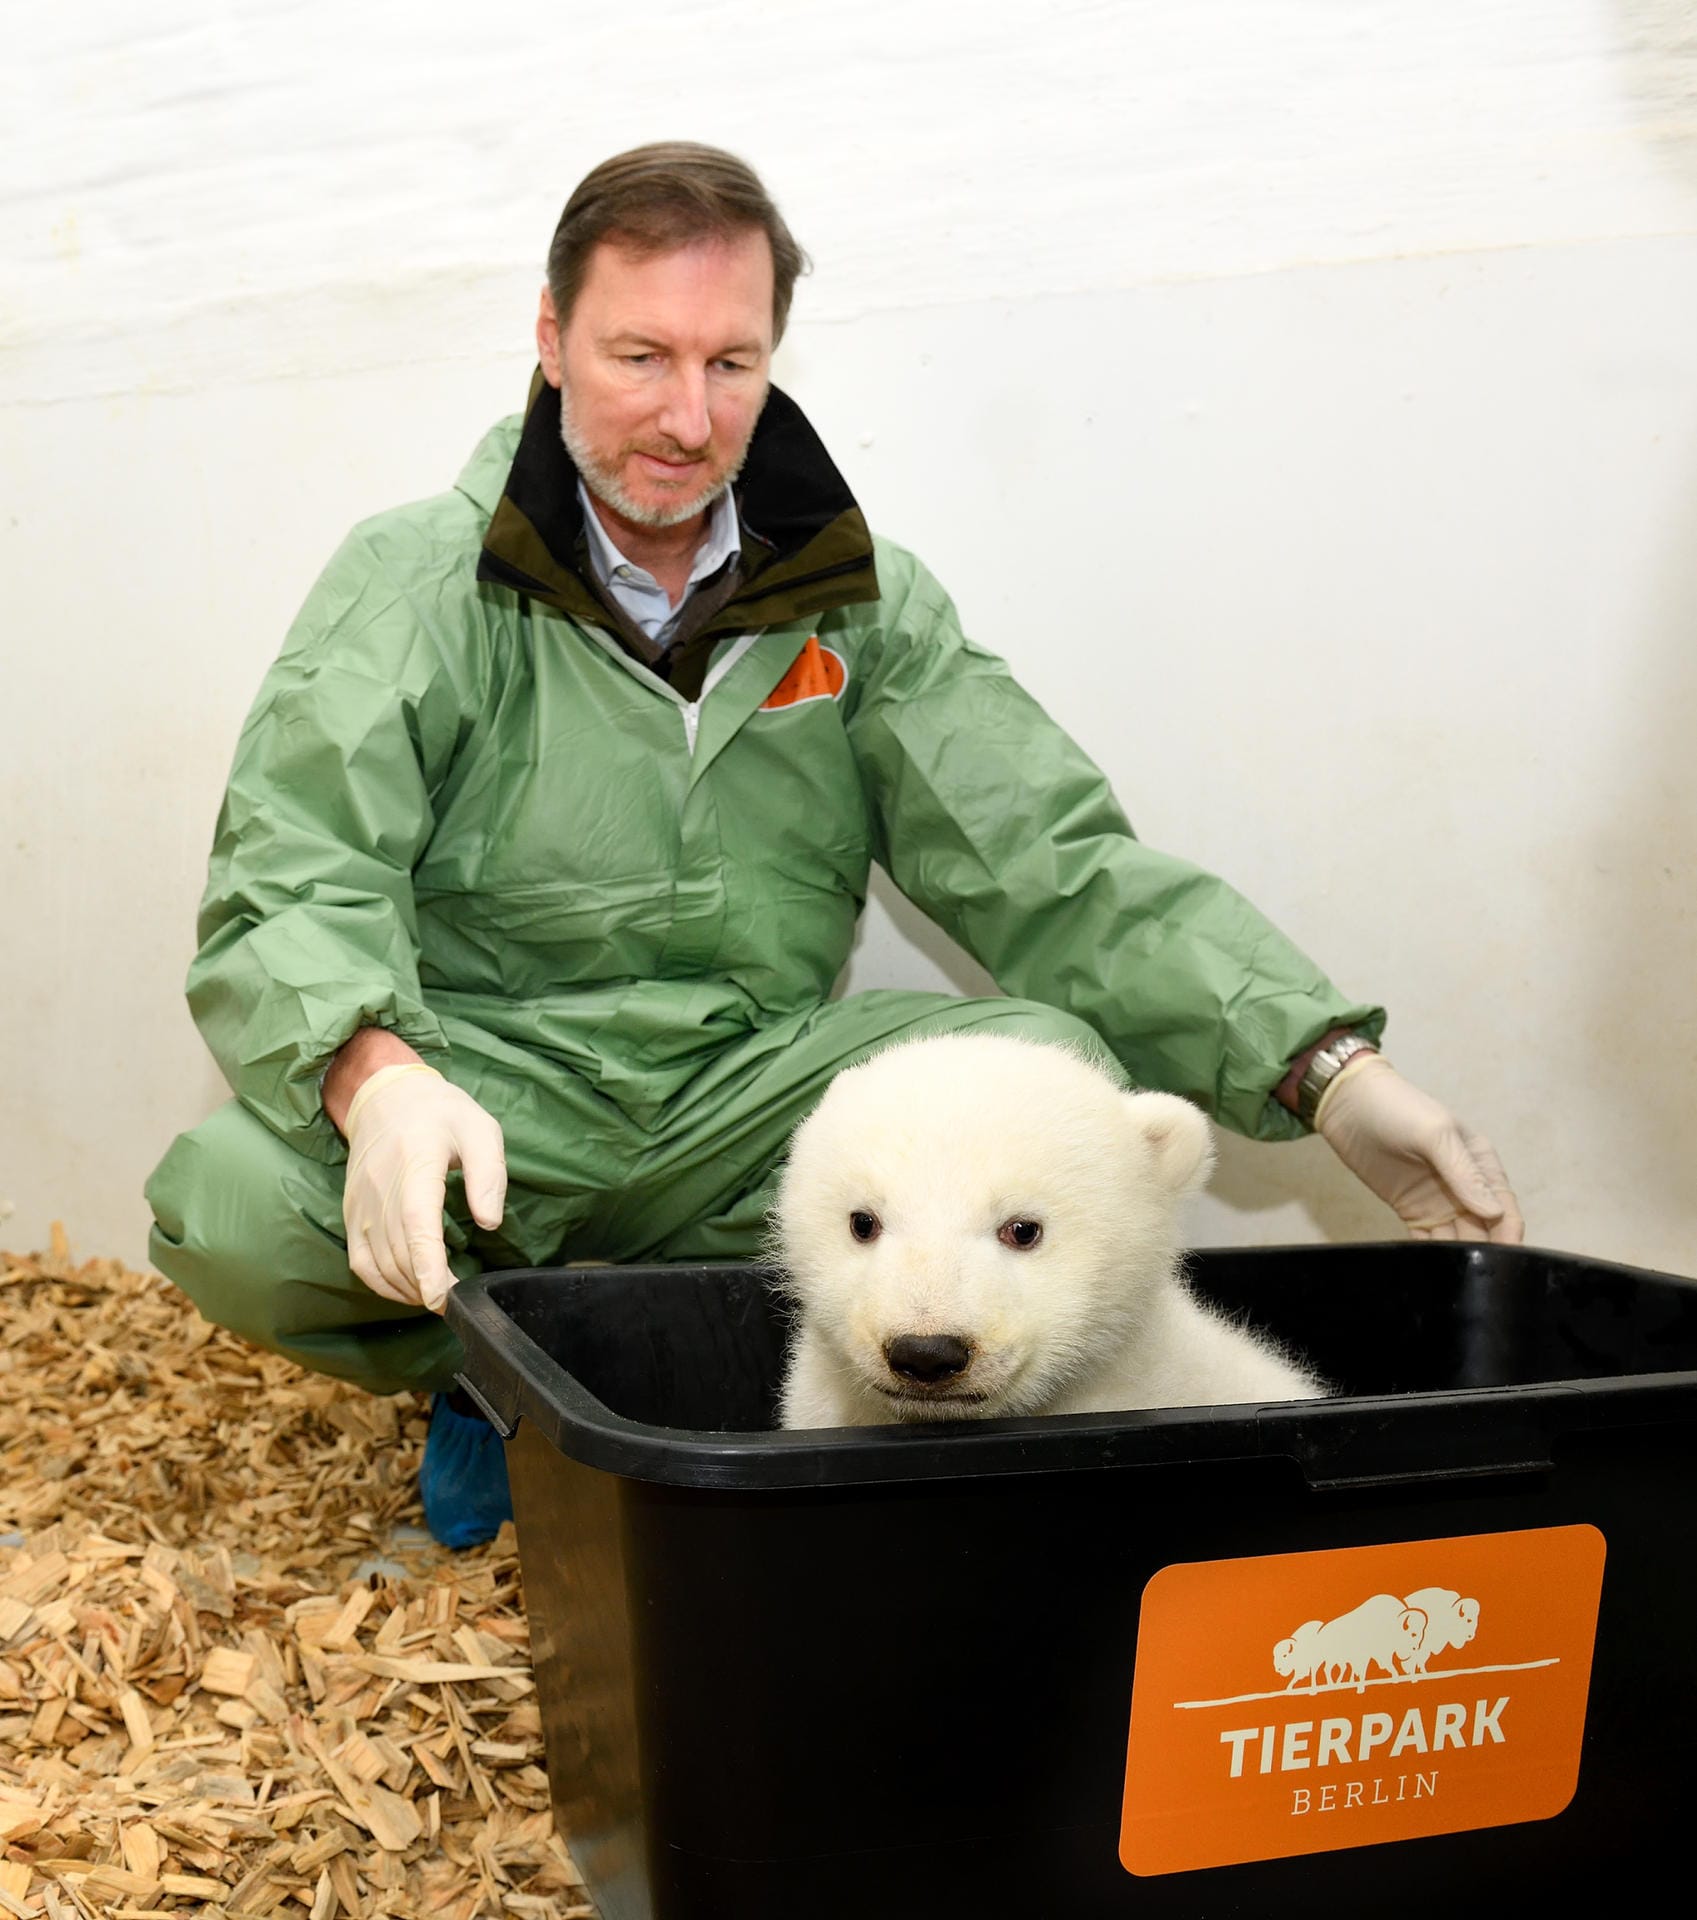 Tierarzt im Eisbärengehege: Andreas Knieriem, Tierarzt und Leiter des Berliner Tierparks, kniet im Gehege des Eisbärbabys.